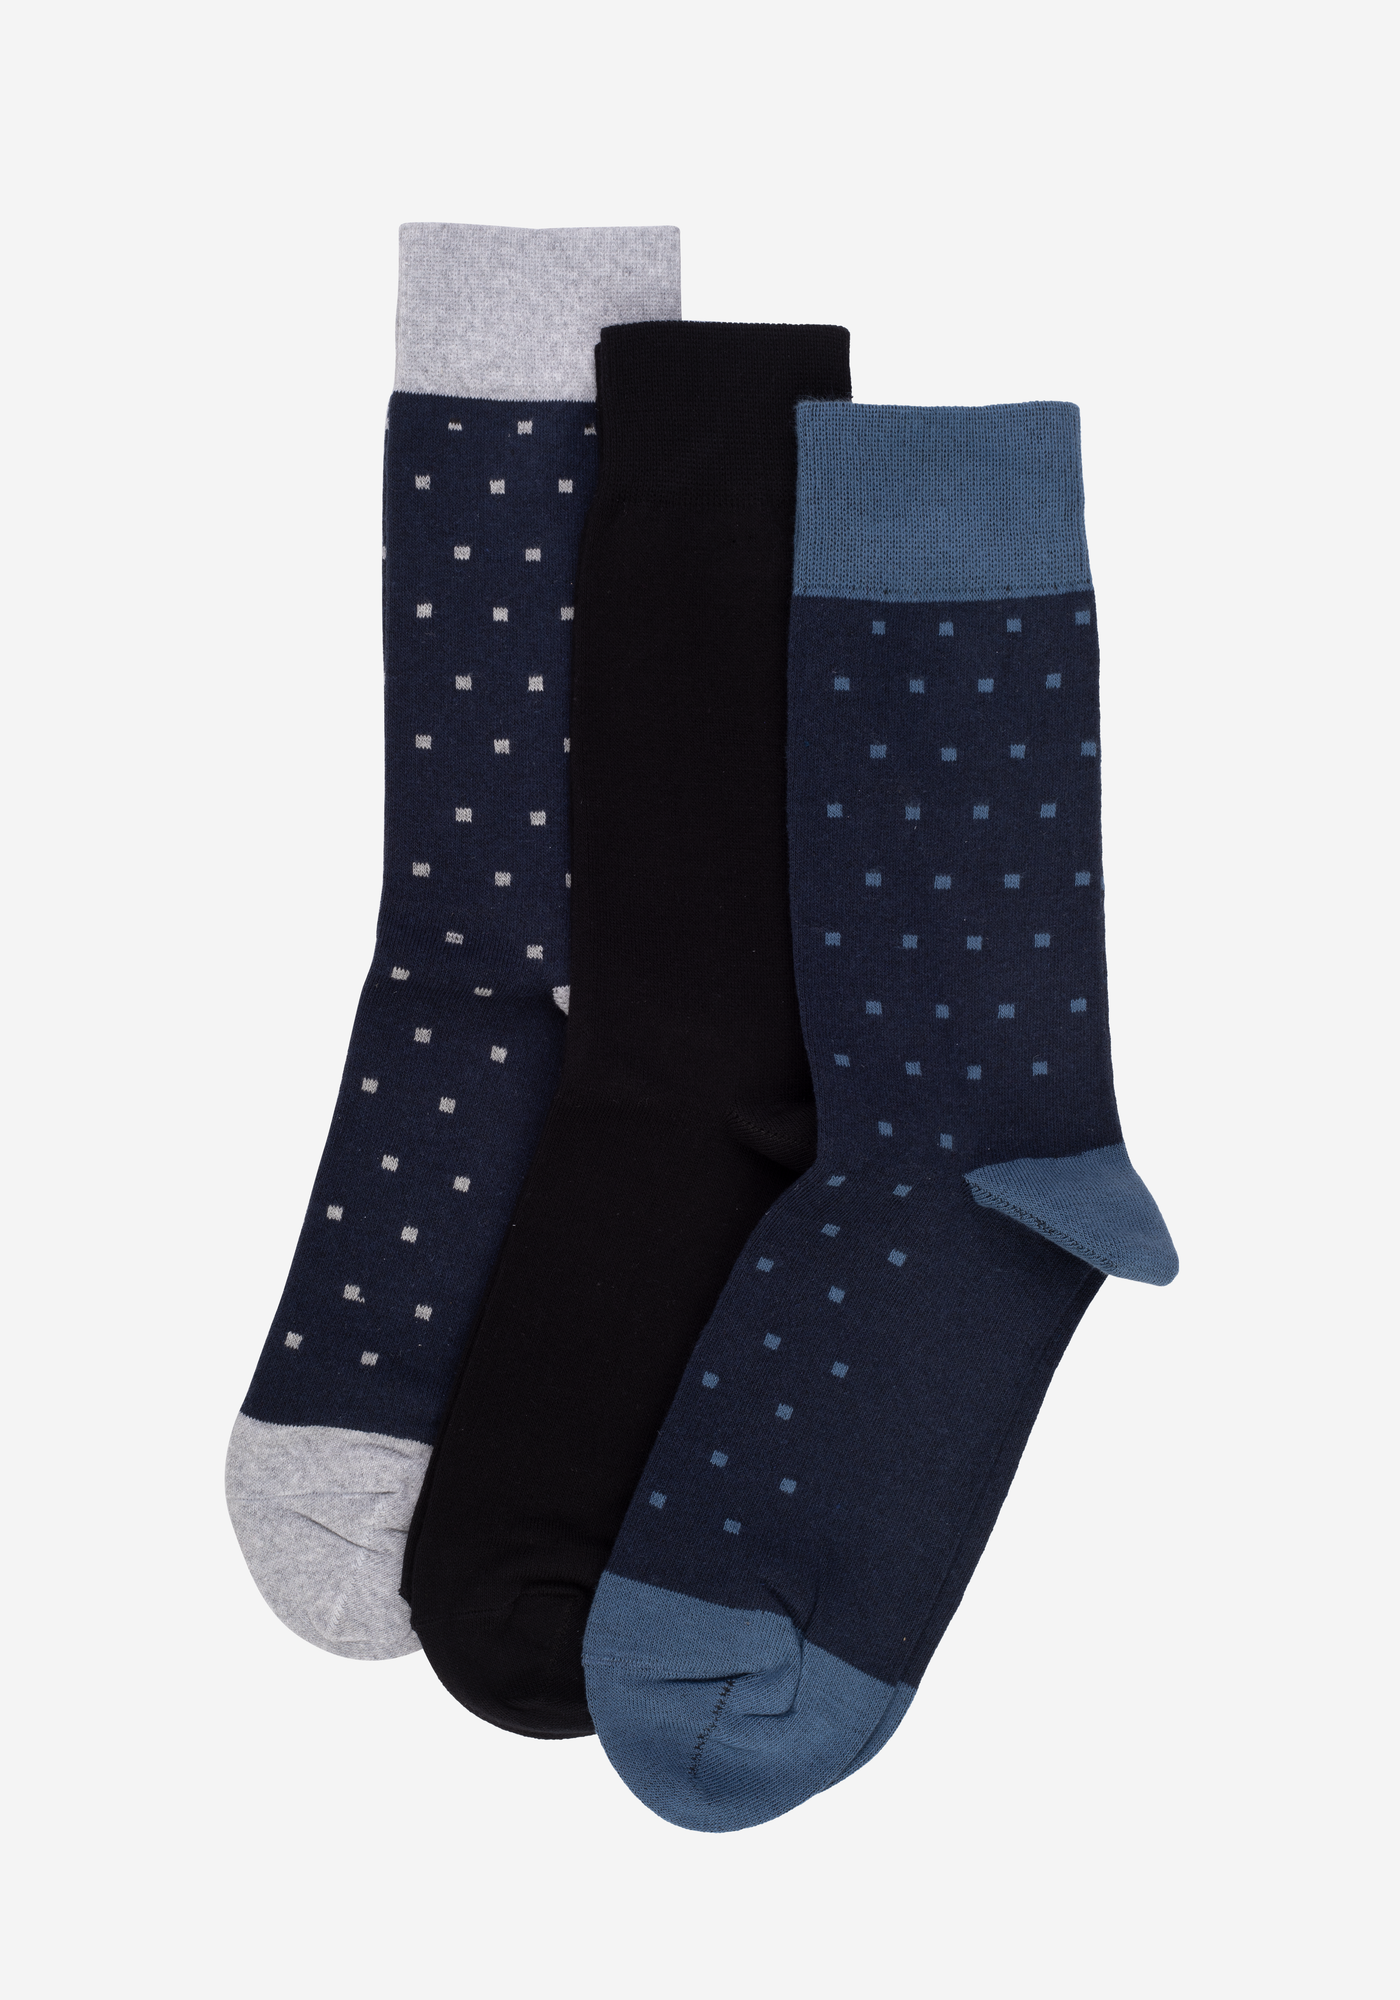 P3*1-910-148 / 3 Long Socks Pack